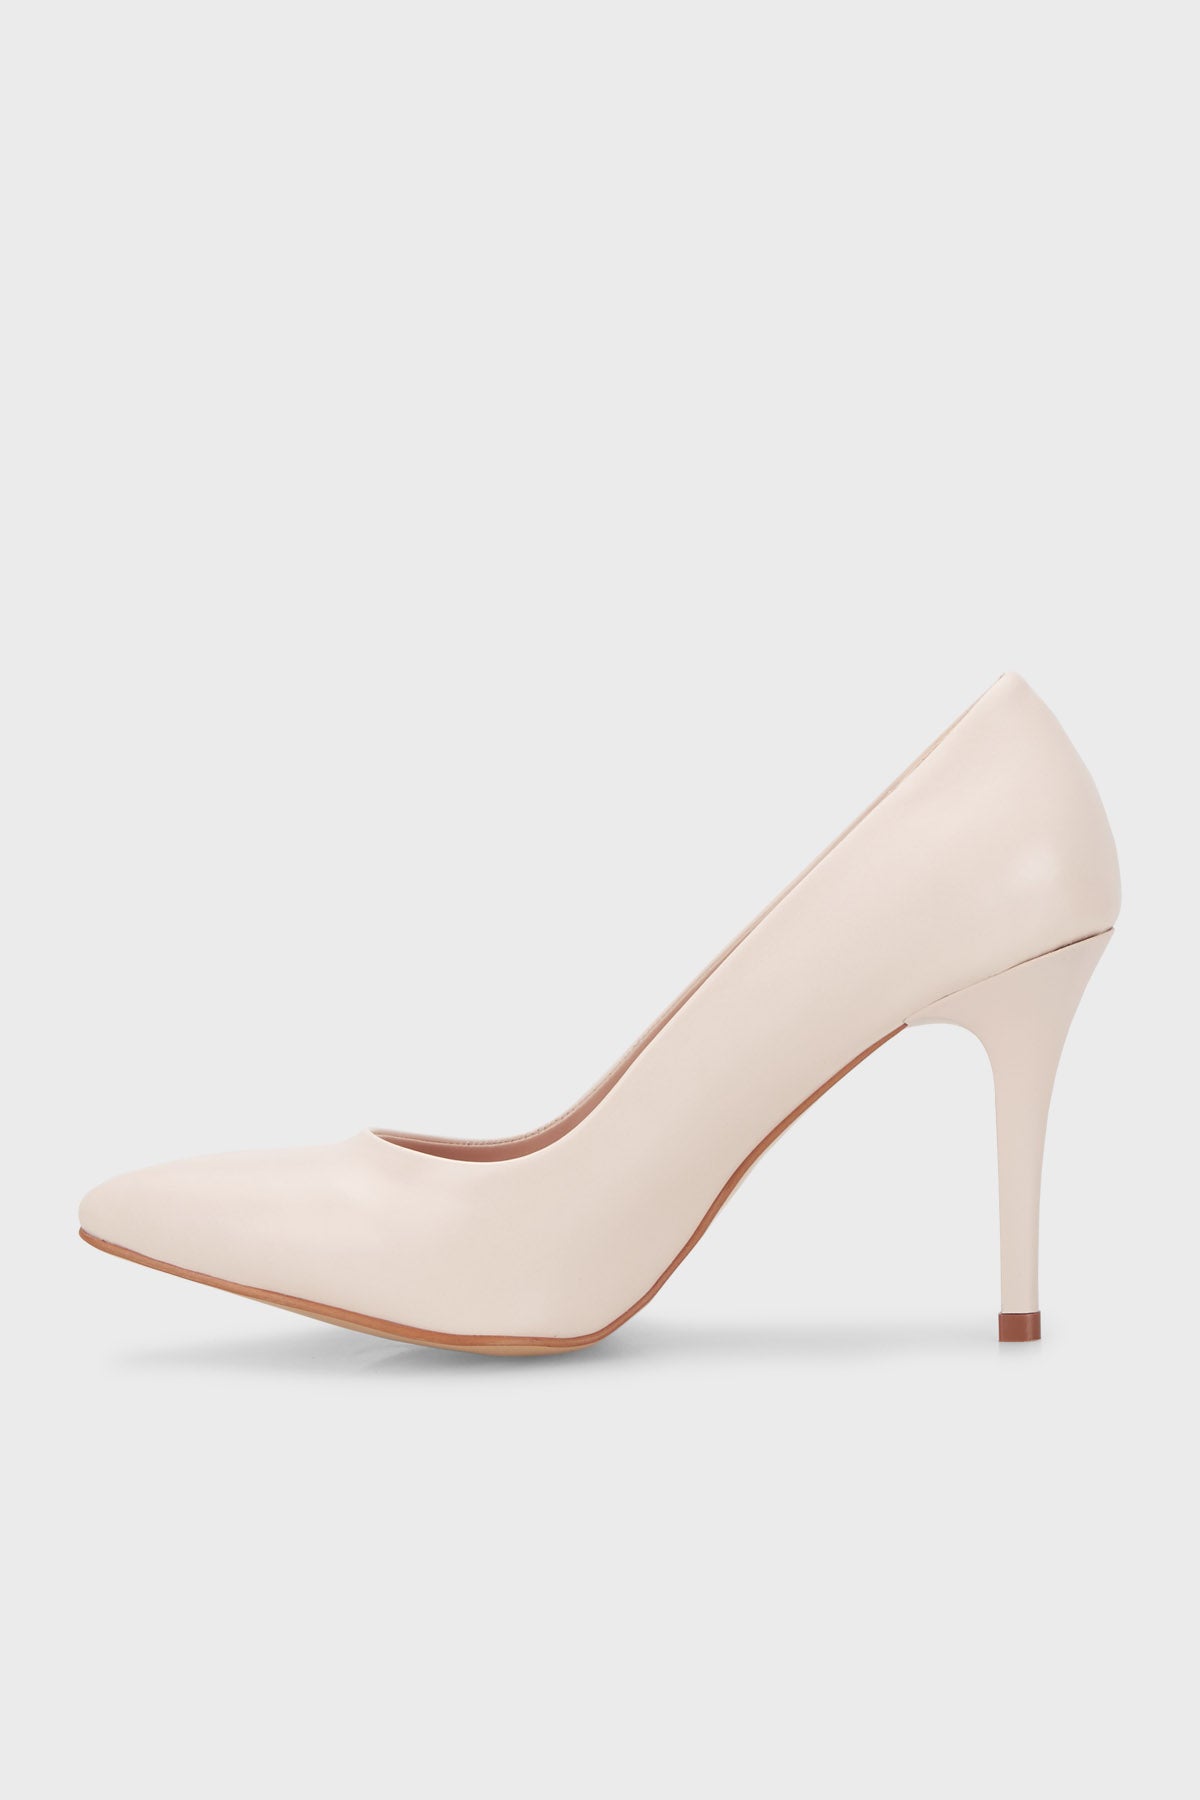 Pierre Cardin Topuklu Stiletto Bayan Ayakkabı PC52210 KREM